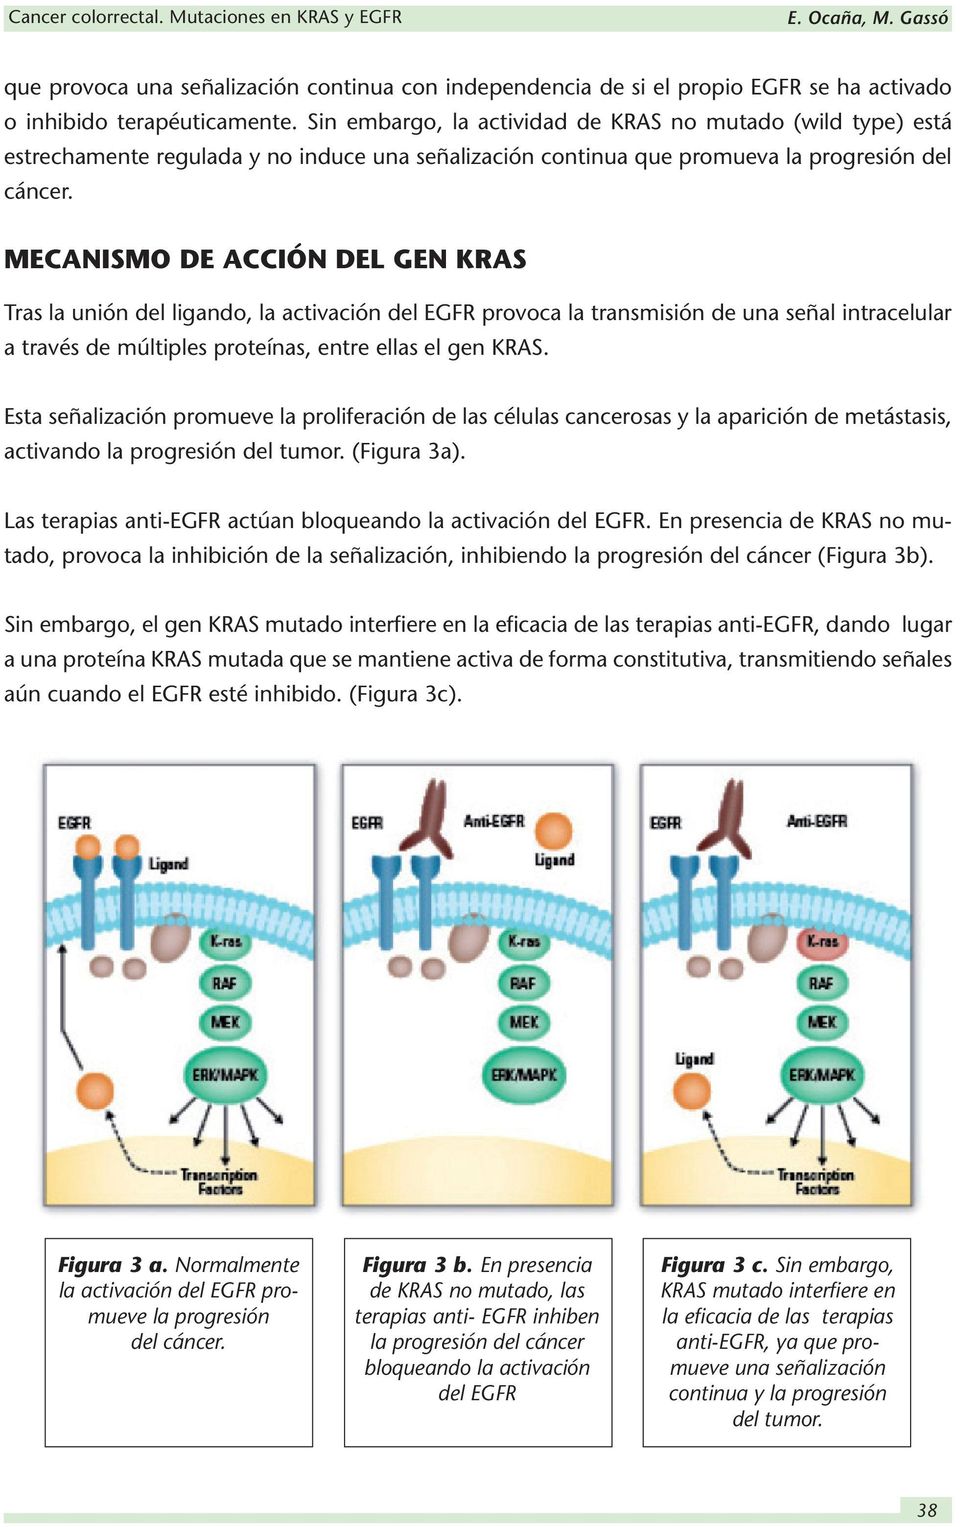 MECANISMO DE ACCIÓN DEL GEN KRAS Tras la unión del ligando, la activación del EGFR provoca la transmisión de una señal intracelular a través de múltiples proteínas, entre ellas el gen KRAS.